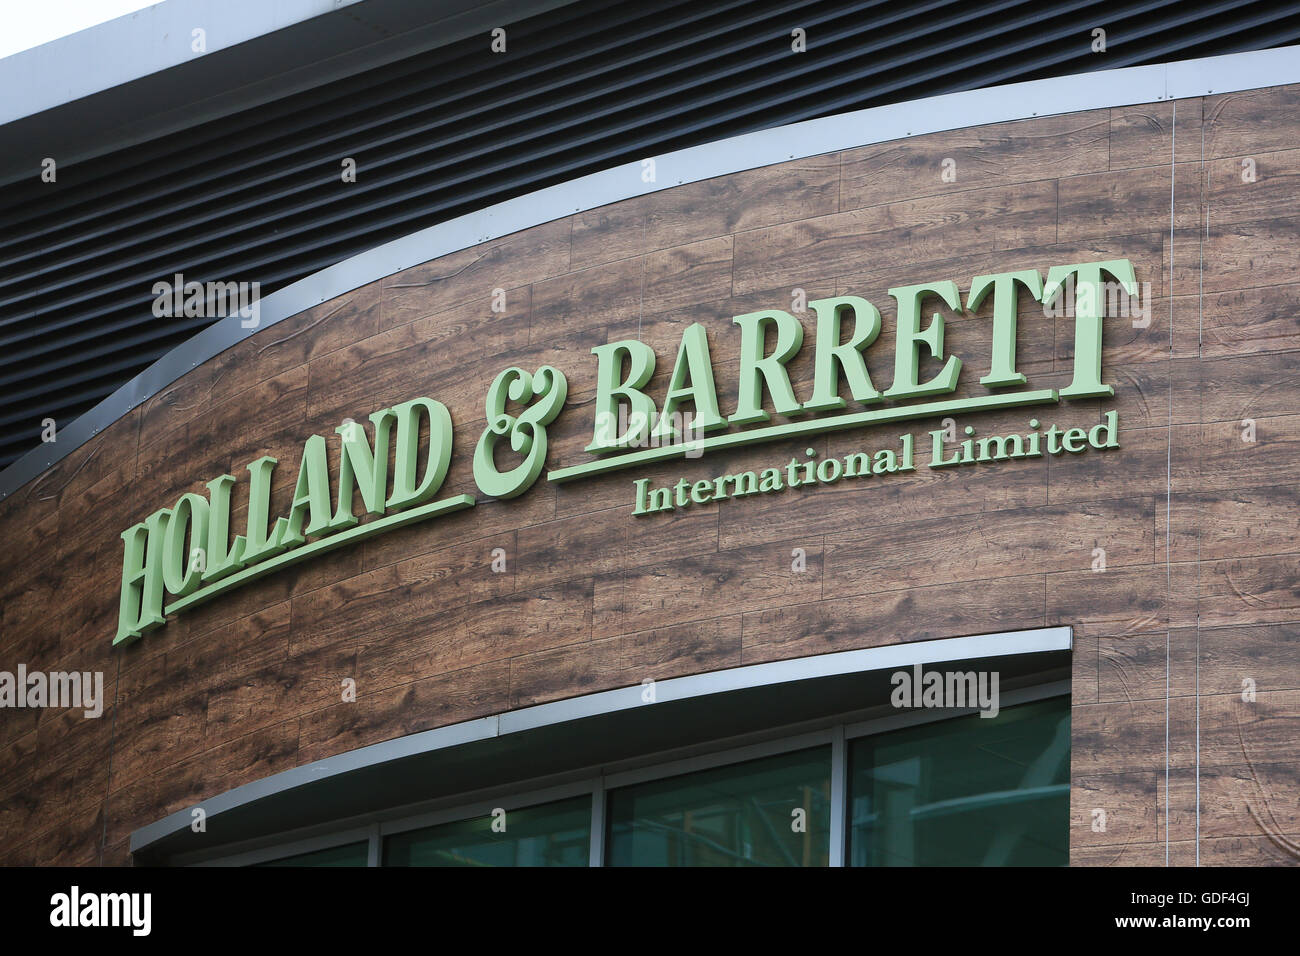 Holland e Barrett sede internazionale a Nuneaton Warwickshire. La salute della DDA ha negozi sparsi in tutto il mondo Foto Stock